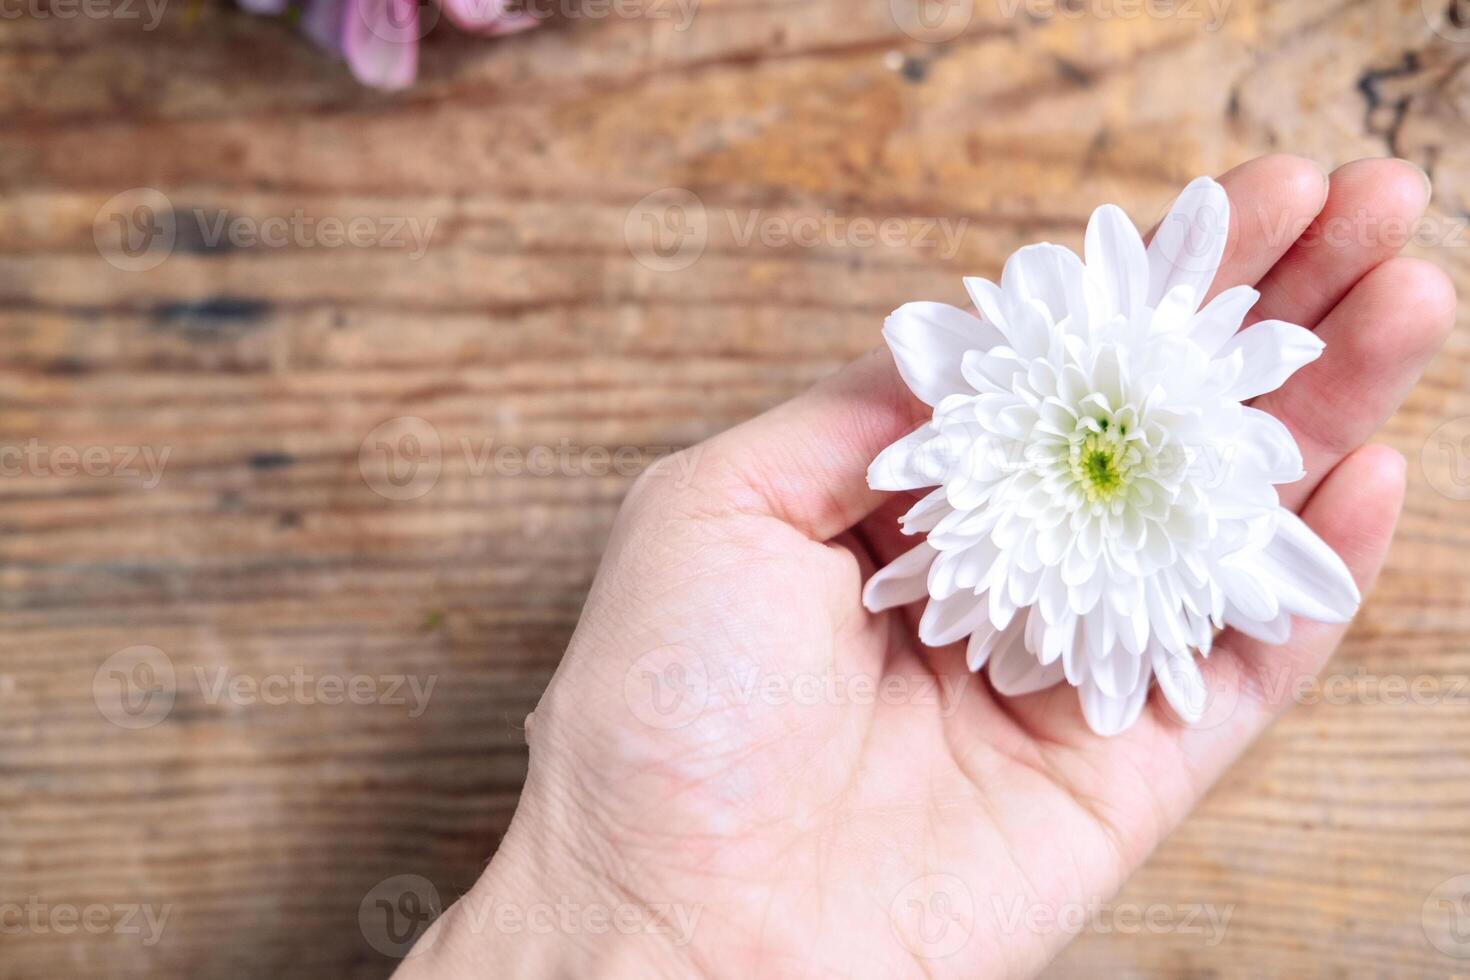 krysantemum knopp i händer på en trä- bakgrund. delikat ram med vit blomma foto